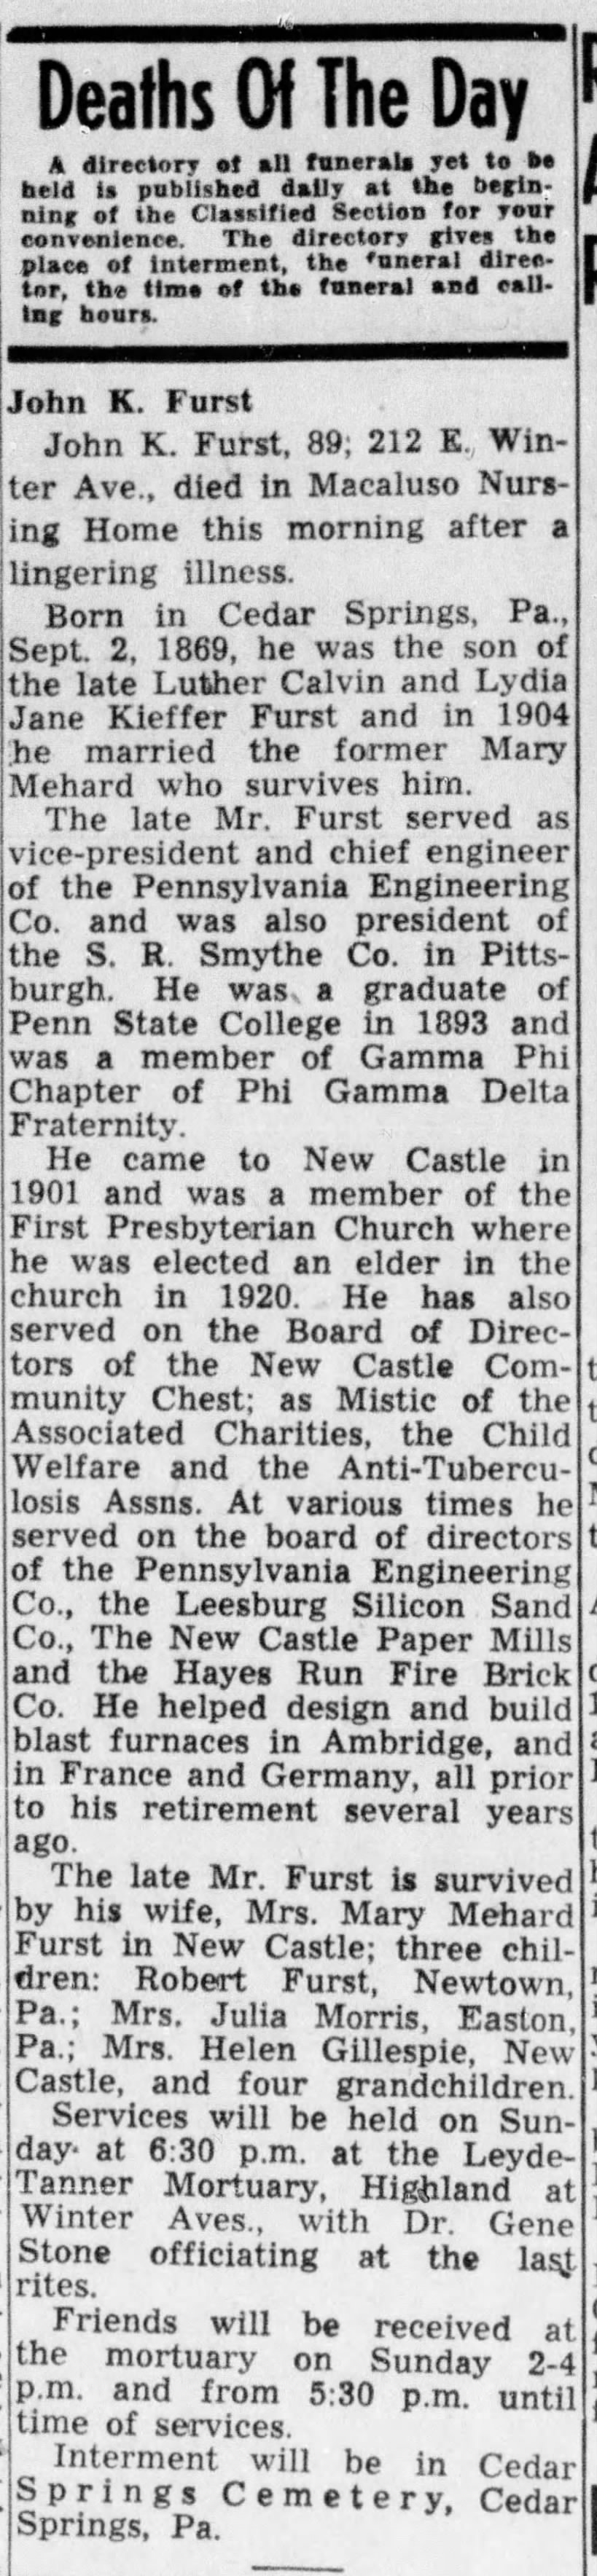 John Furst's Obituary - New Castle News, March 7, 1959